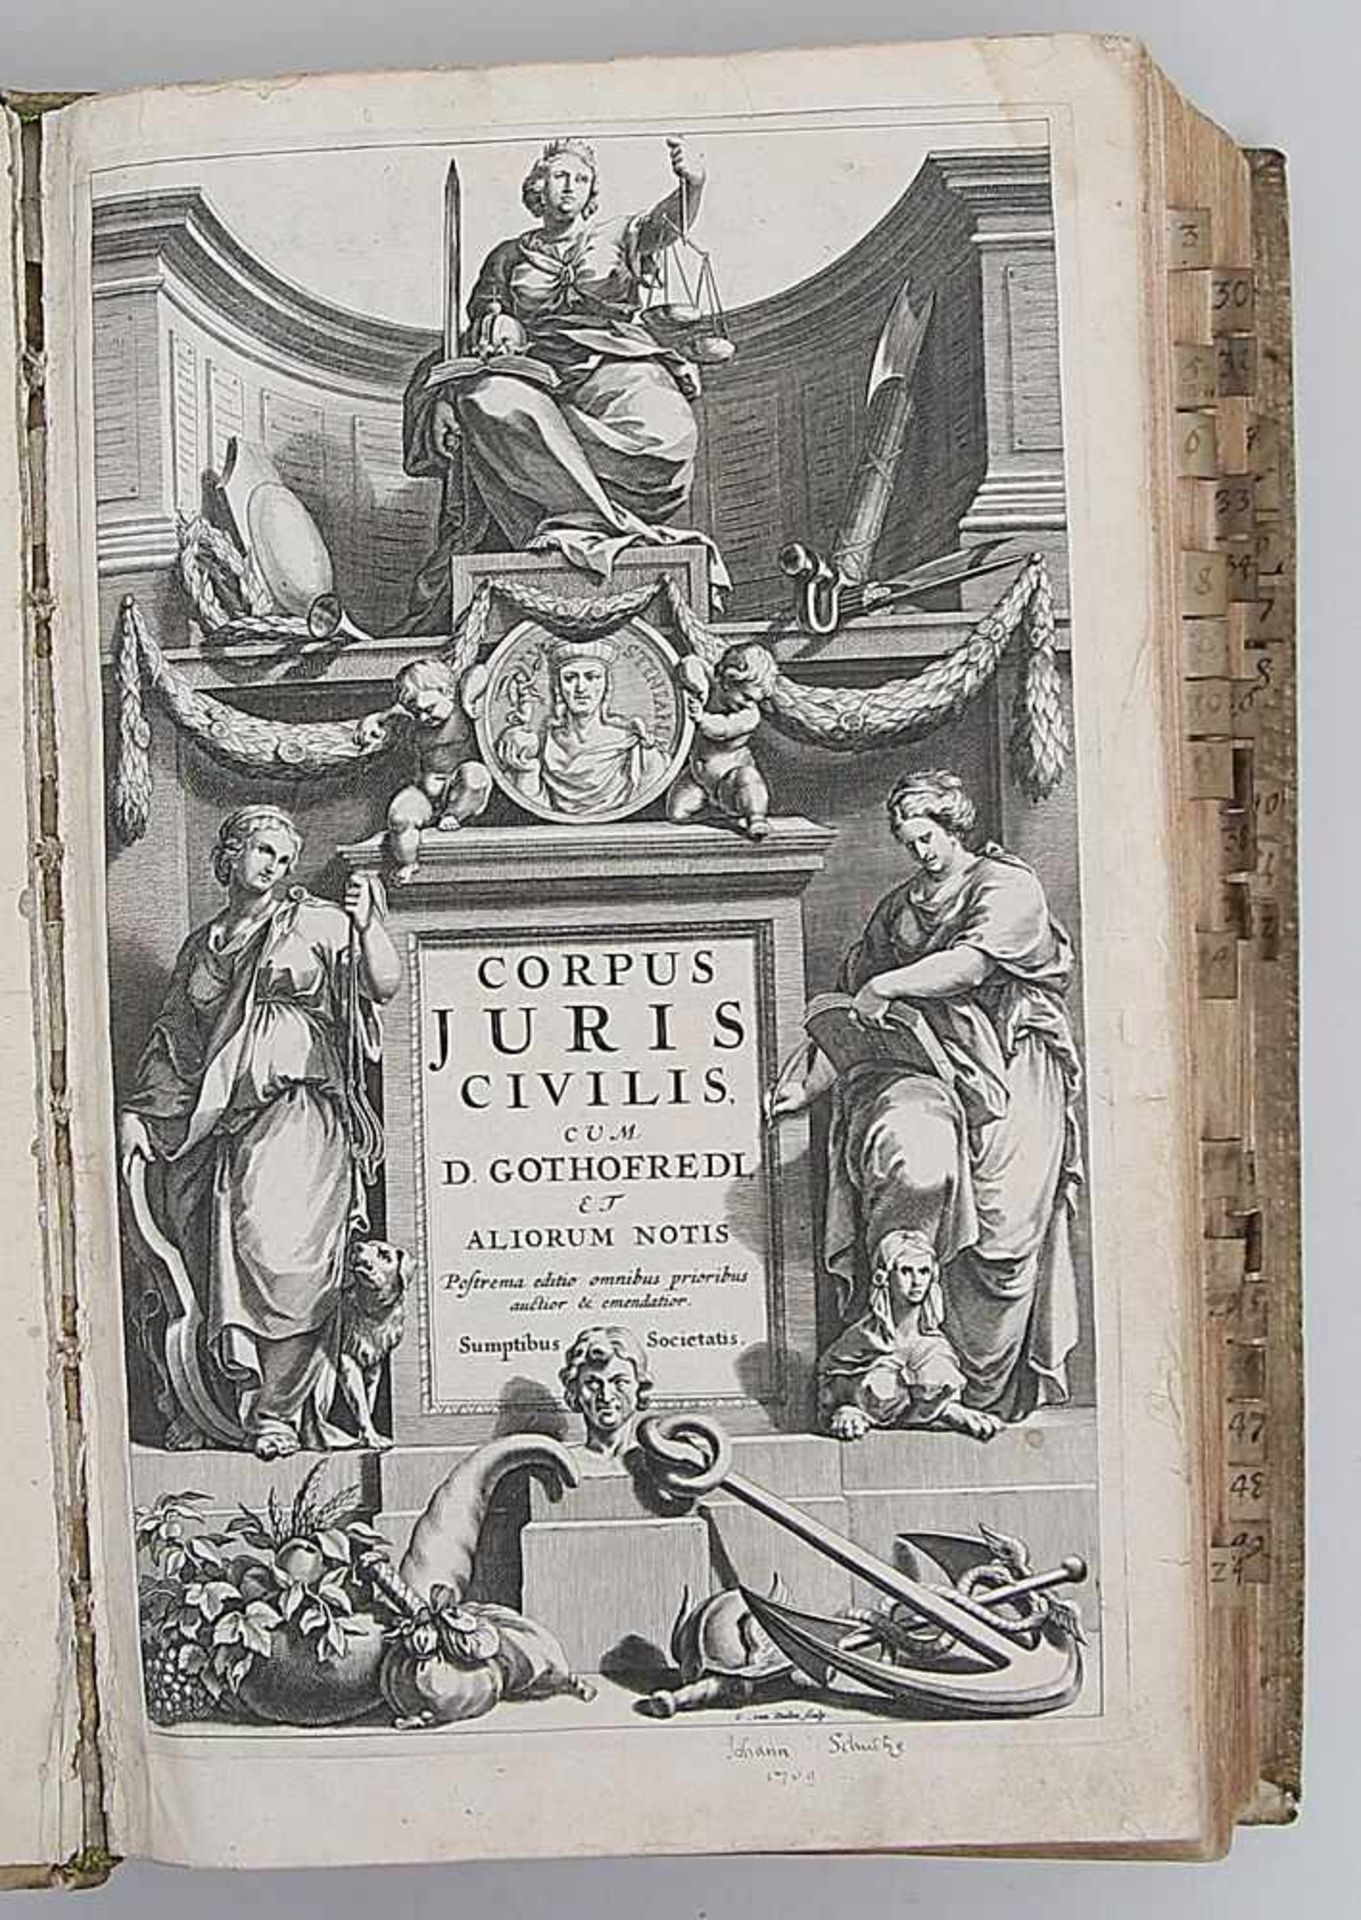 Godefroy, Denys (Dionysius Gothofredius)"Corpus juris civilis, pandectis ad Florentinum archetypum